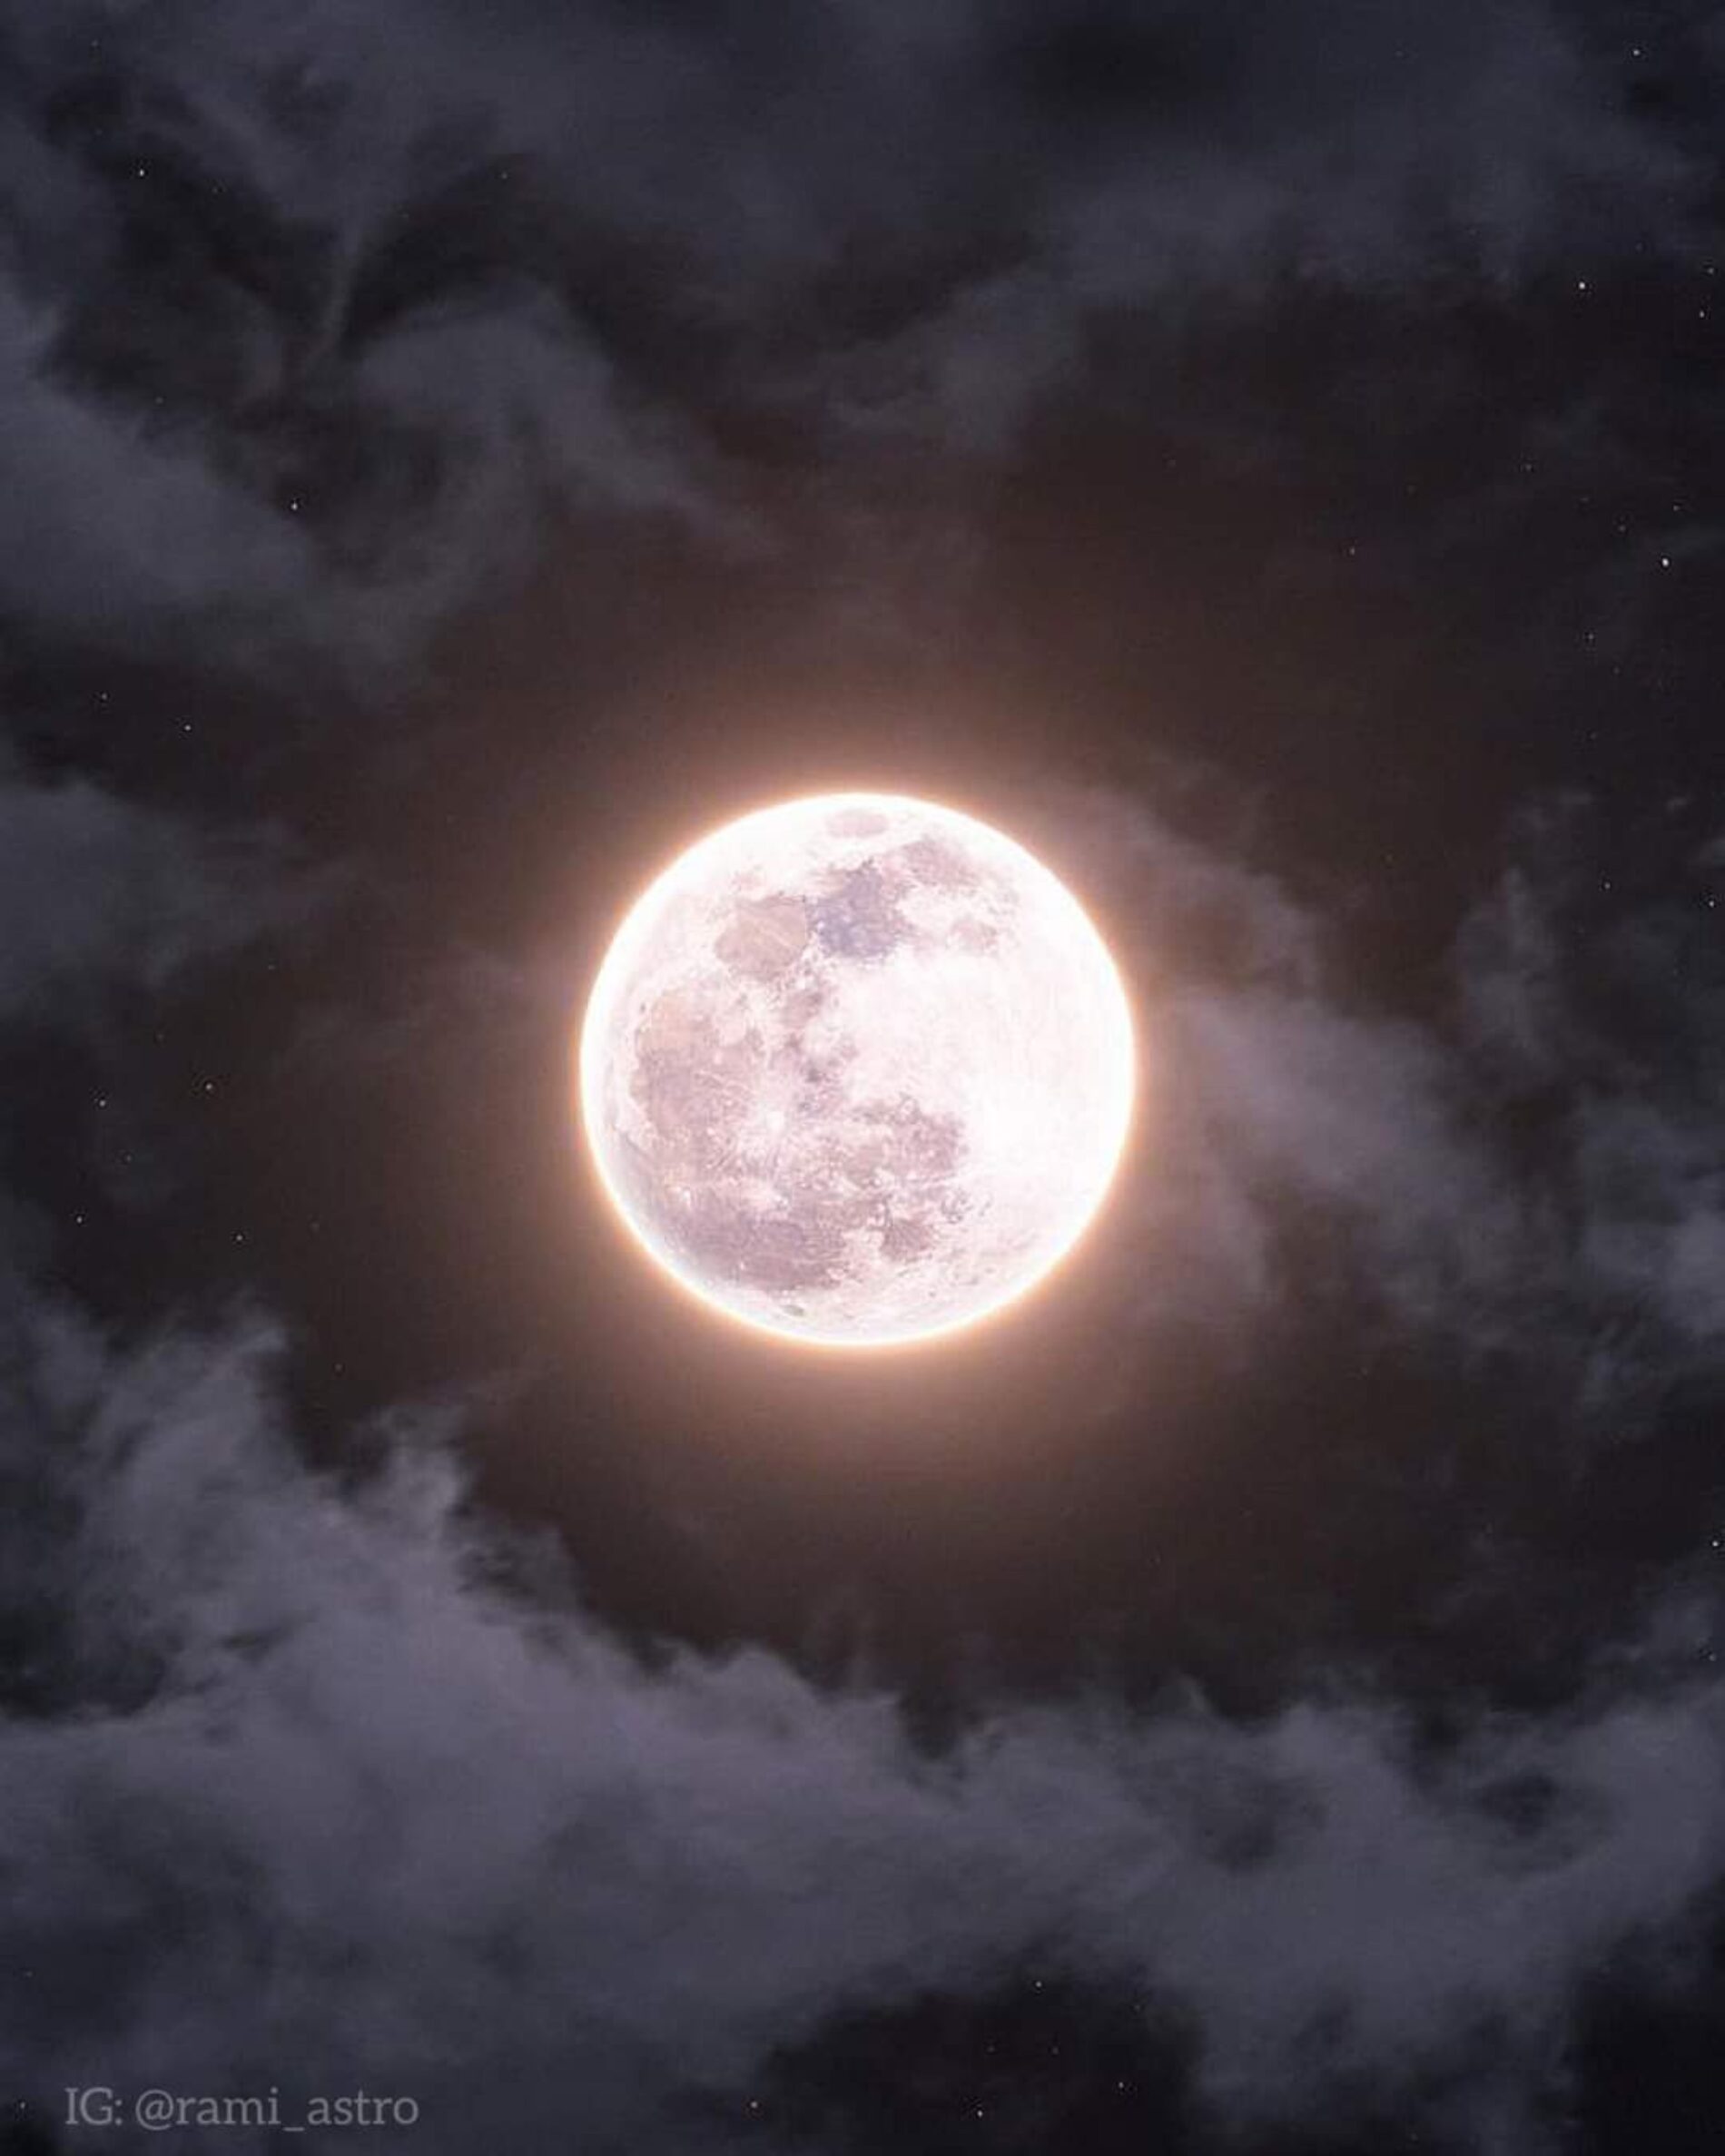 Entérate | Habrá luna rosa, un espectáculo astronómico que no te puedes perder. 🌕